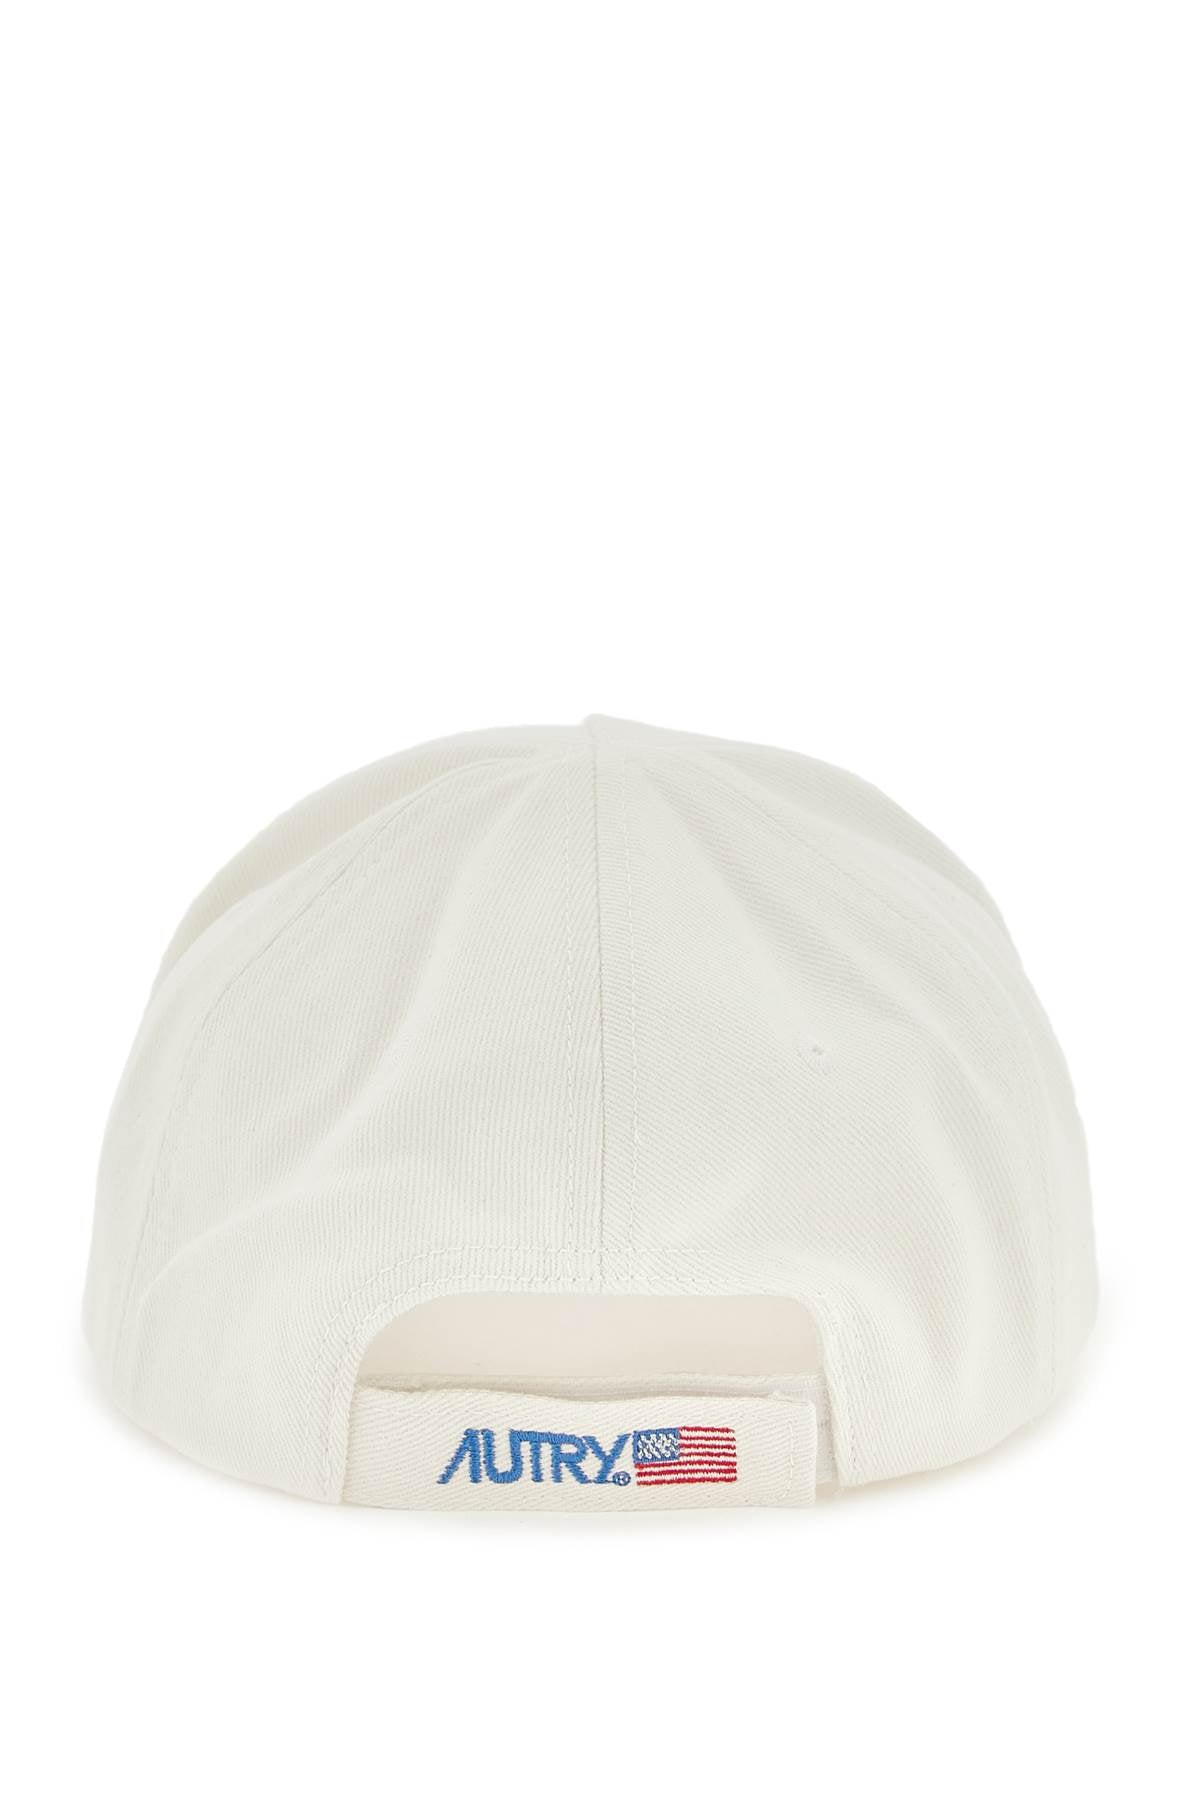 Autry Autry 'iconic logo' baseball cap